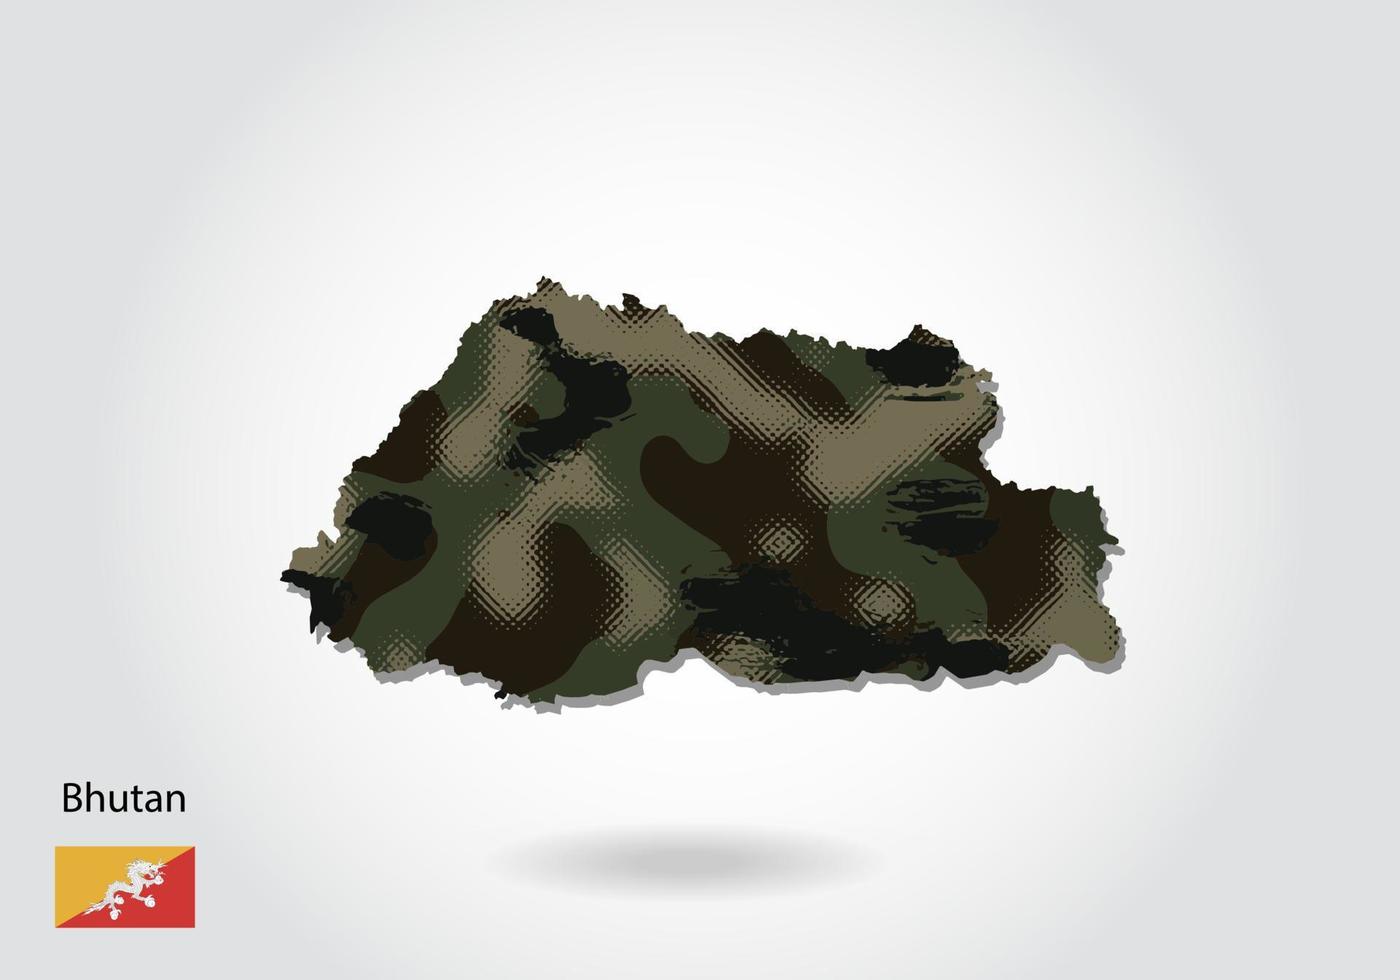 mapa de bután con patrón de camuflaje, textura verde bosque en el mapa. concepto militar para ejército, soldado y guerra. escudo de armas, bandera. vector